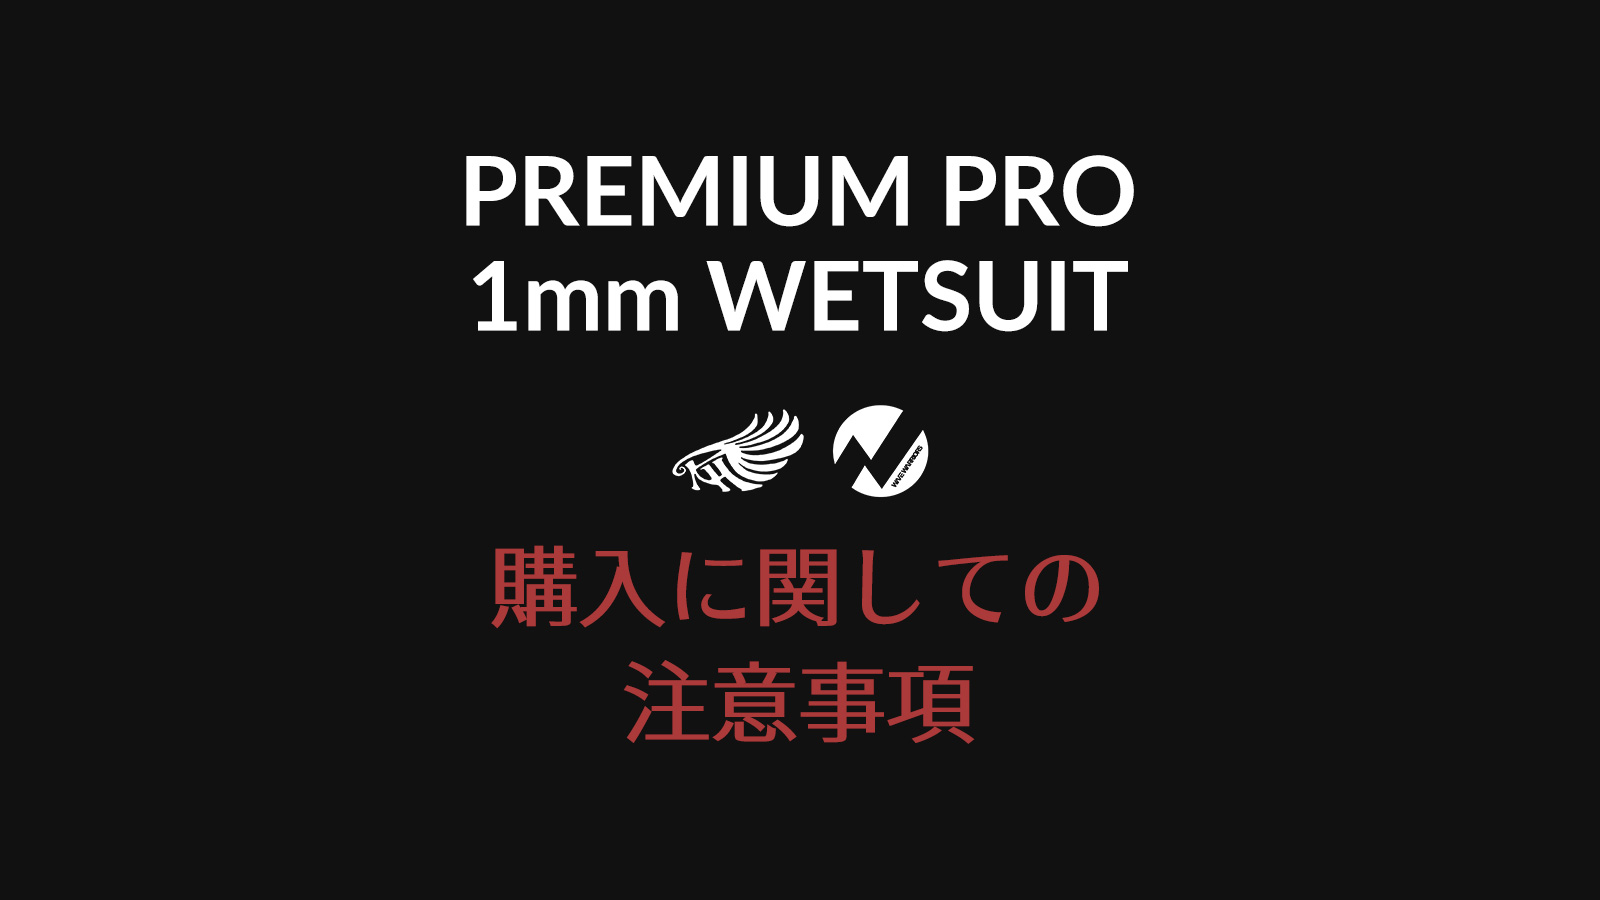 【お知らせ】PREMIUMPRO 1mm WETSUIT 購入に関しての注意事項